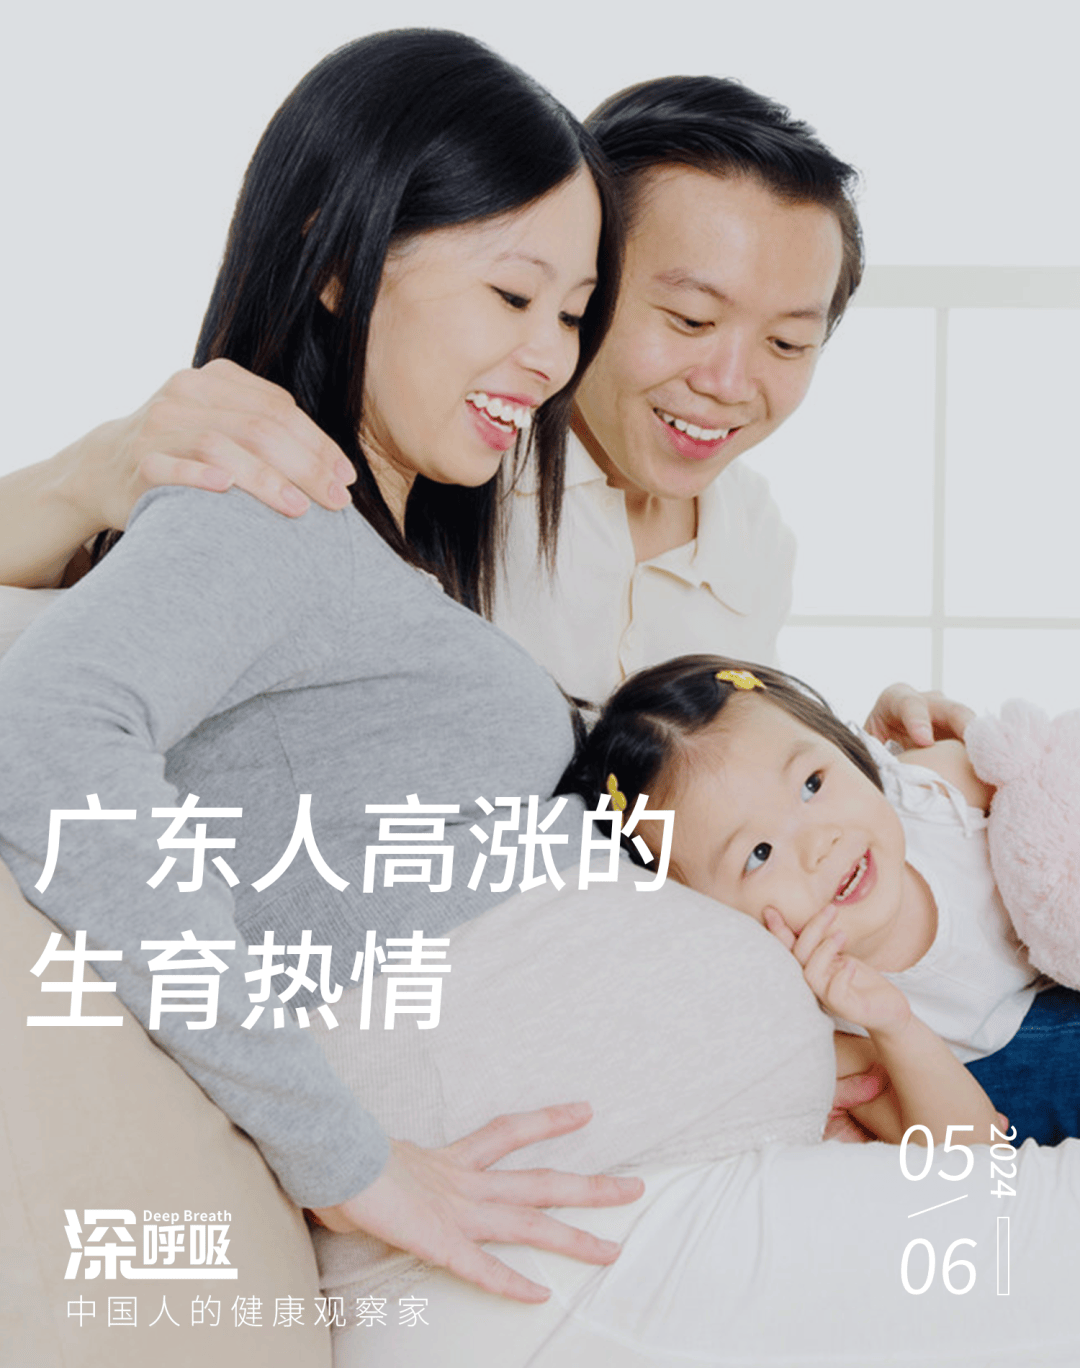 出生人口第一，为什么广东人这么喜欢生孩子？